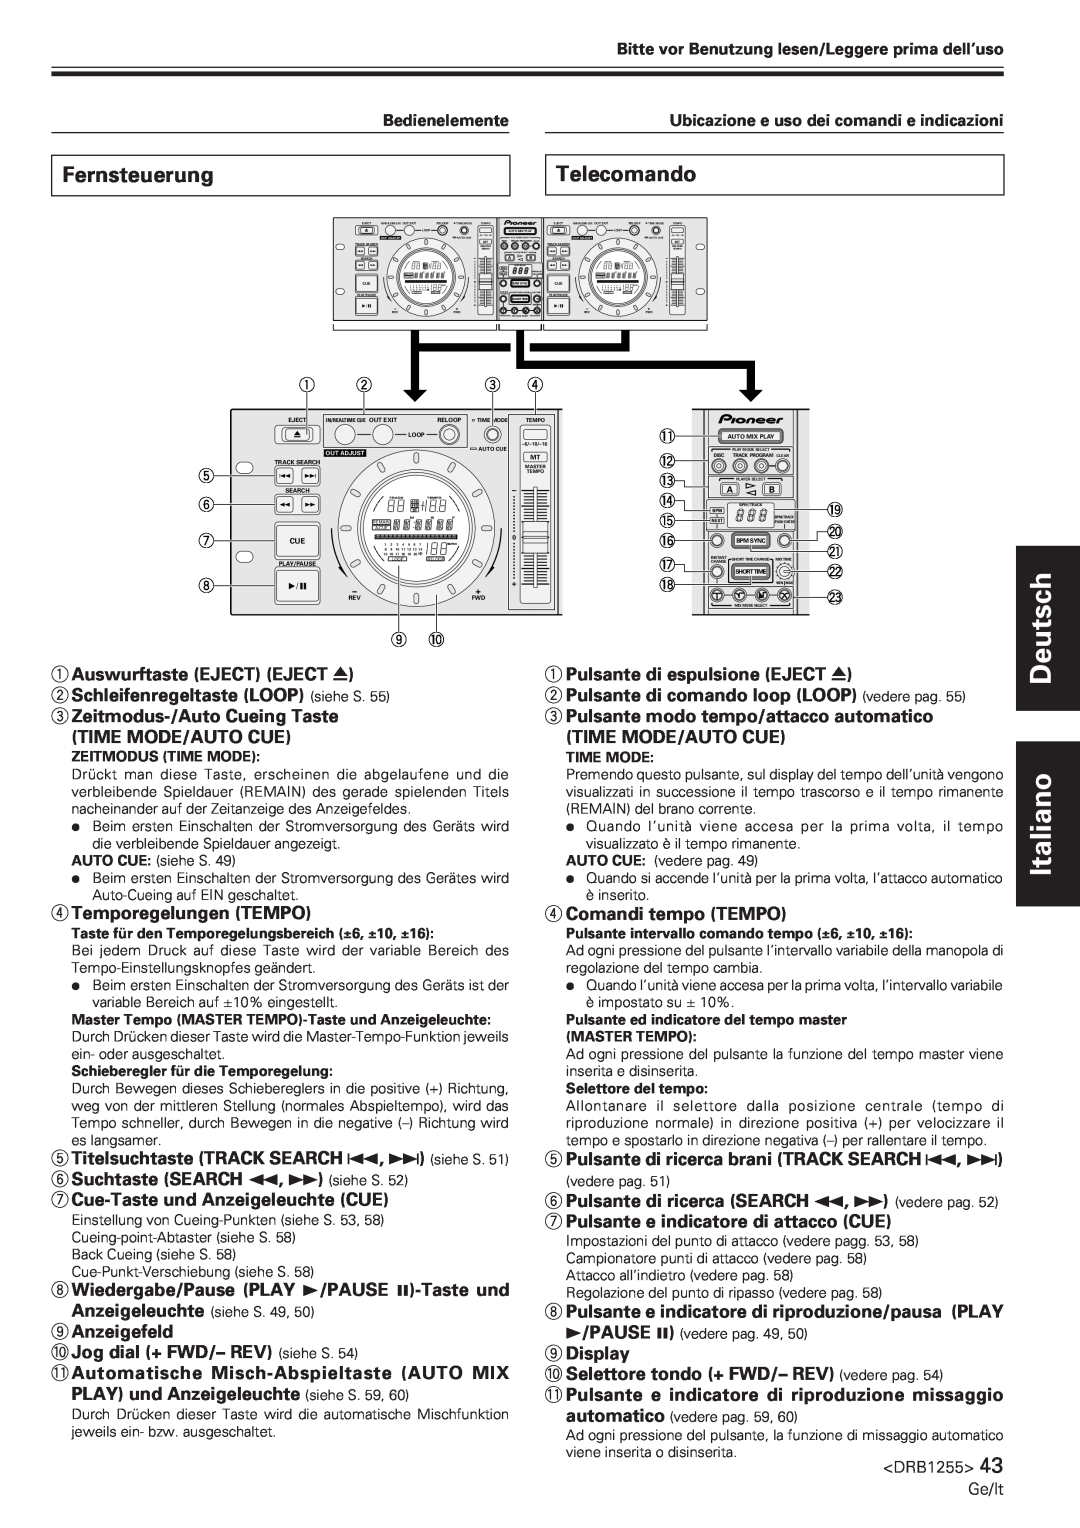 Pioneer CMX-5000 manual Italiano, Fernsteuerung, Telecomando 